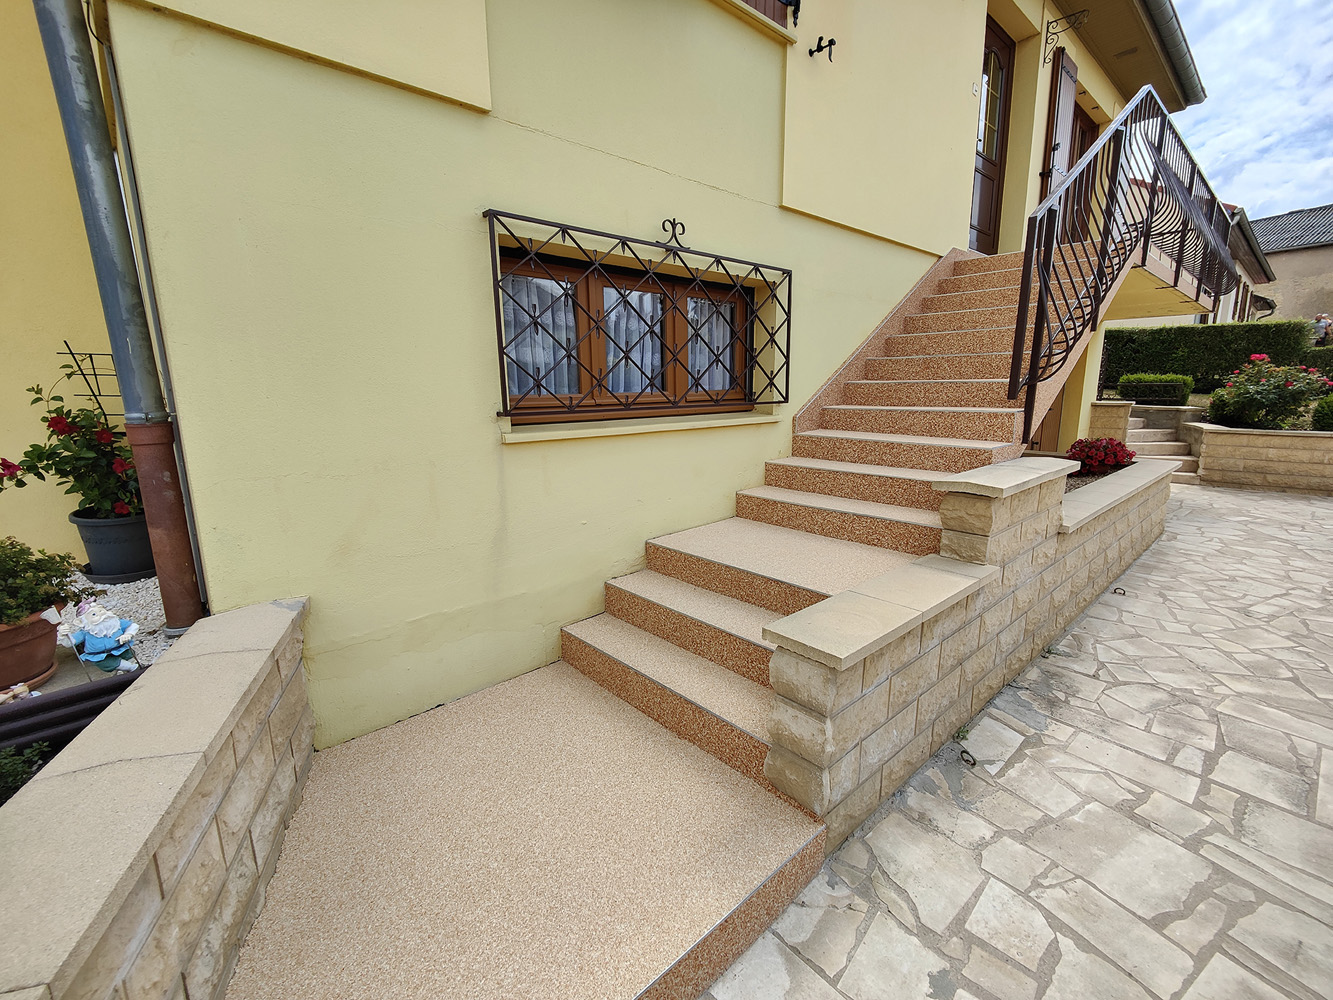 Projet de rénovation extérieure moquette de marbre Home Résine escaliers extérieurs